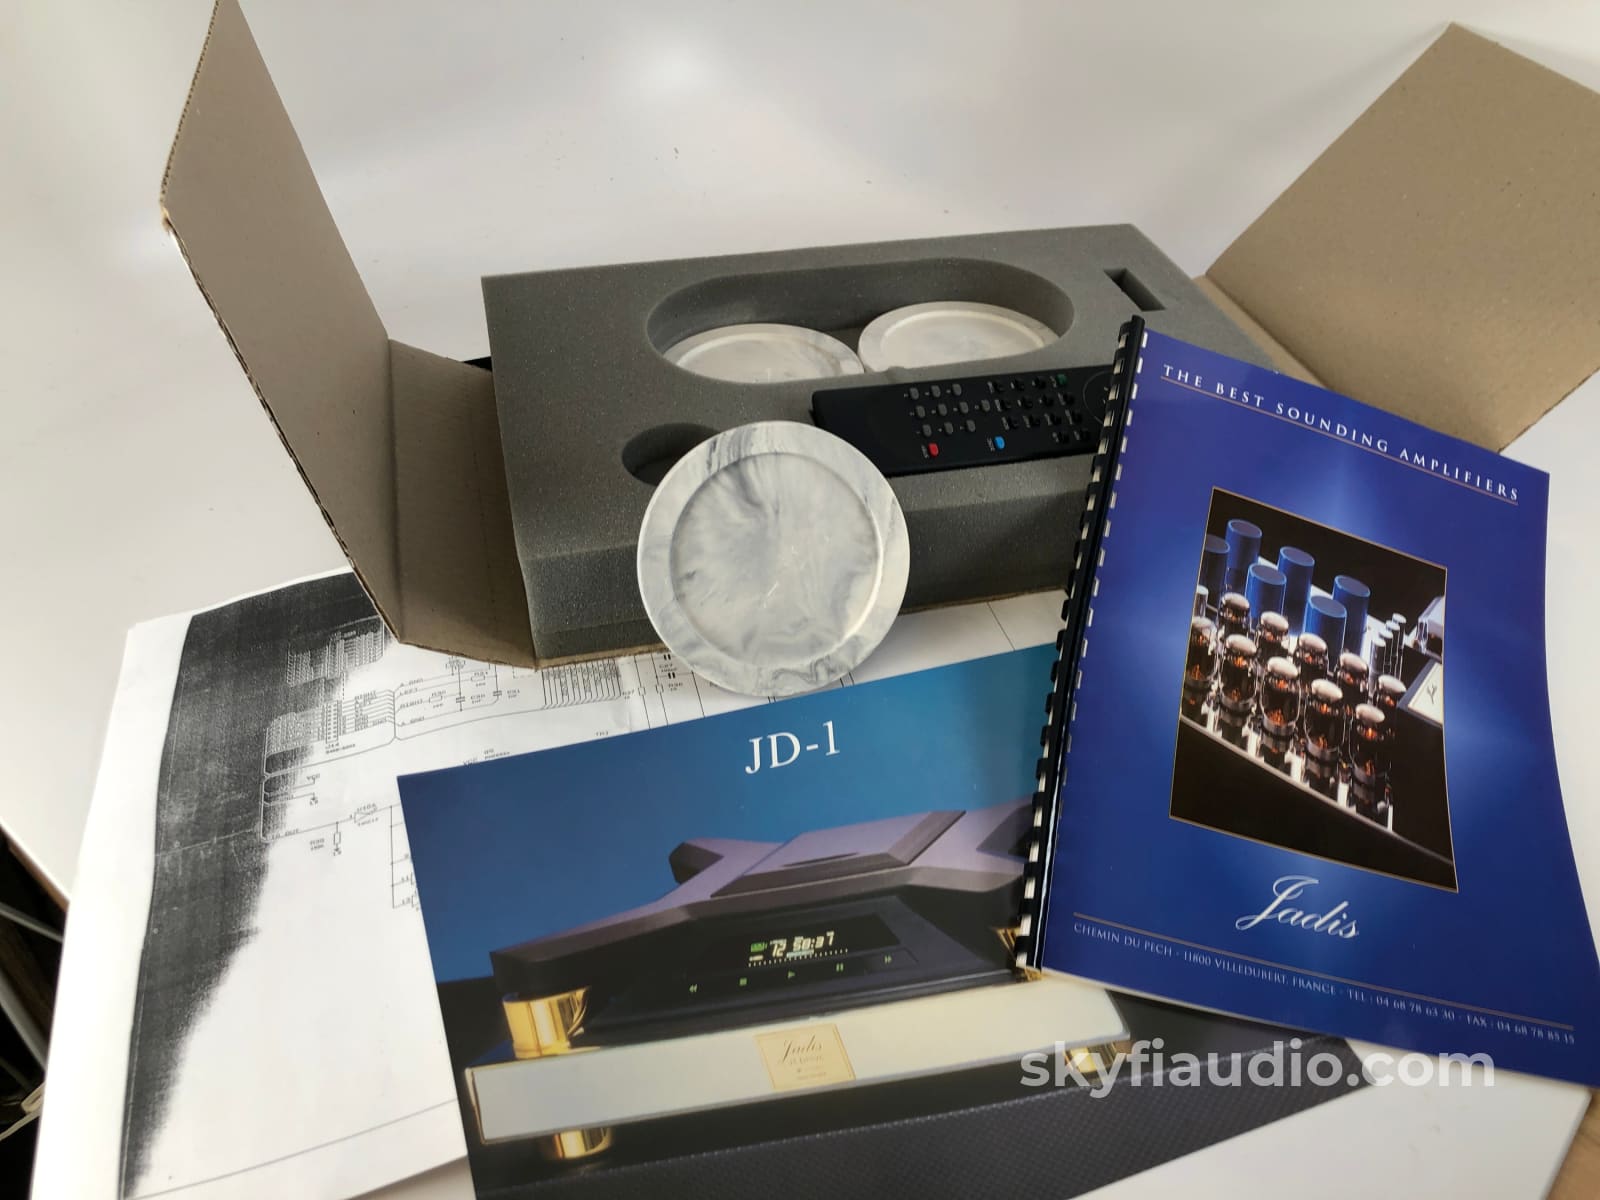 Jadis Jd1 Drive Cd Transport In Rare Rosewood - Like New In Box + Digital